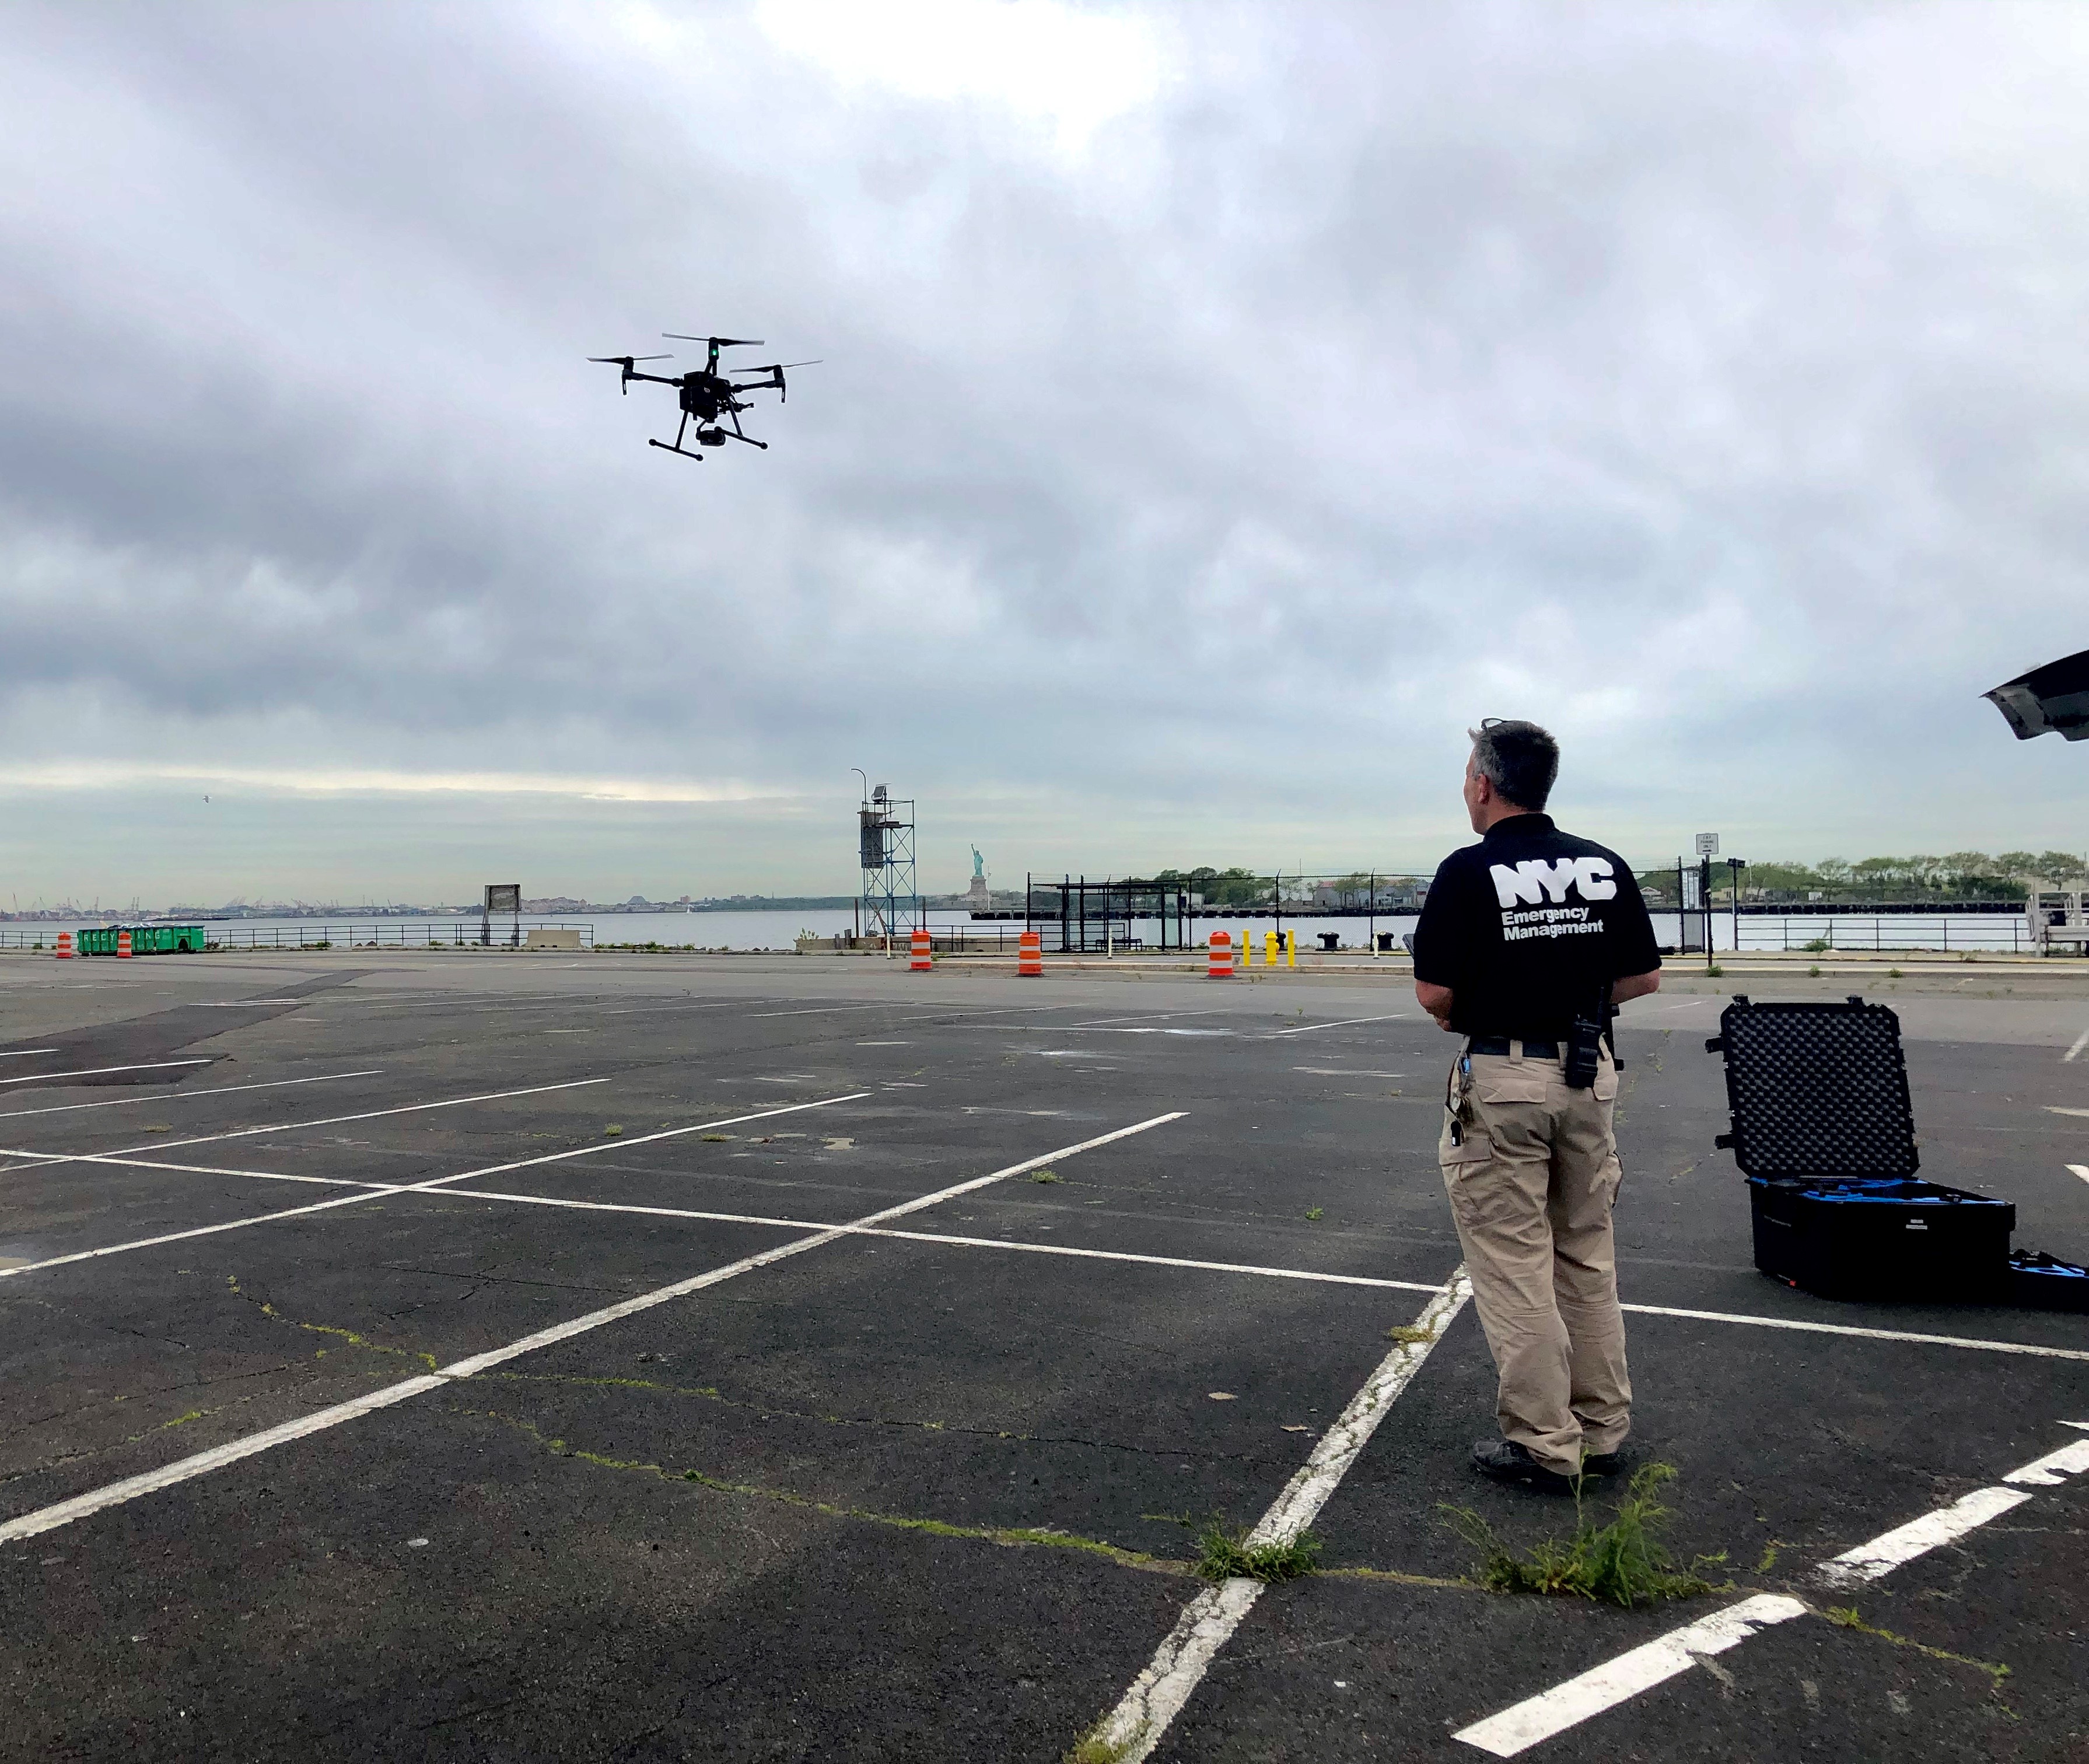 CIC Brett Davis test flying a drone